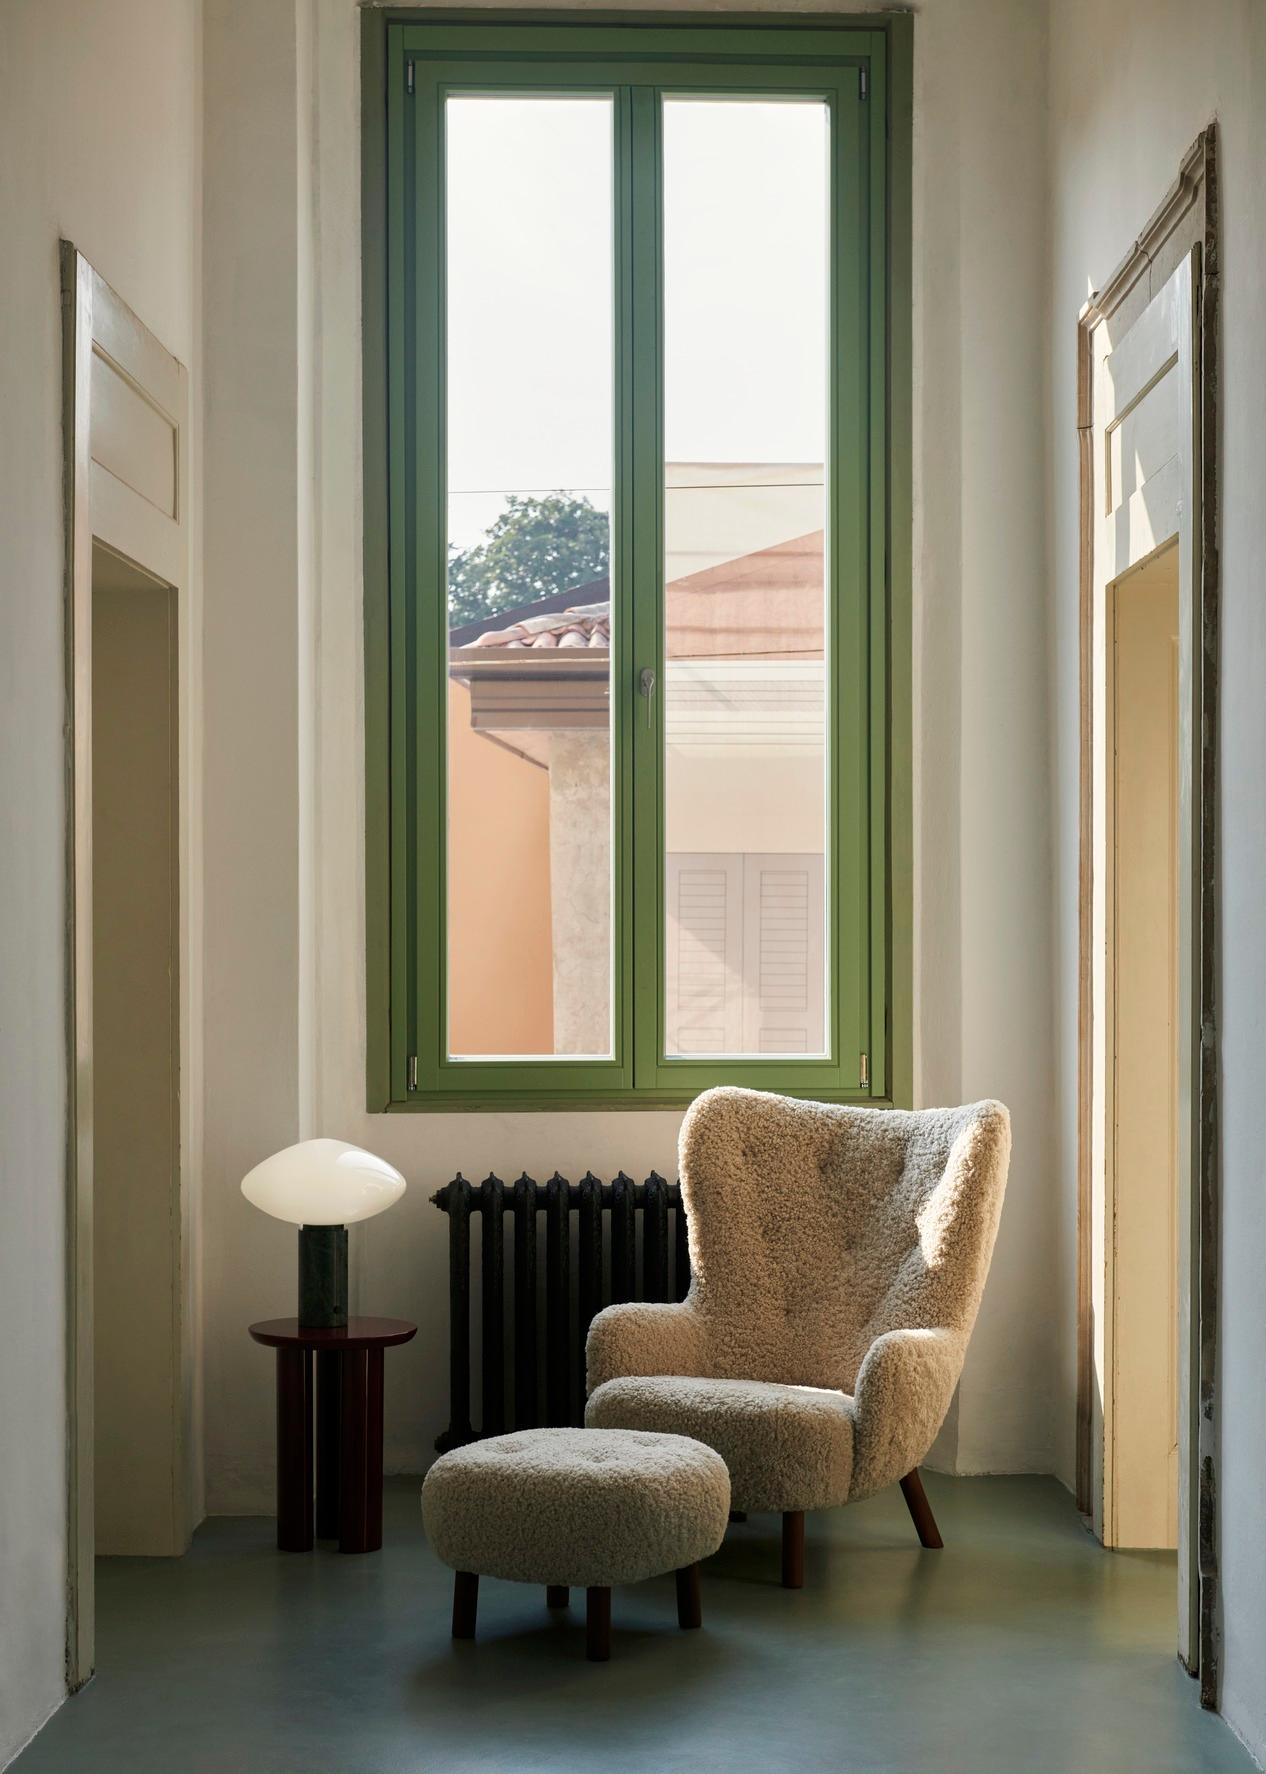 Petra VB3 
Inspiré d'un modèle original conçu par le designer danois Viggo Boesen en 1938, Petra est un fauteuil de salon au dossier haut et ailé, d'un confort inégalé. 
Le fauteuil Petra fait suite au grand succès de Little Petra, nommé d'après la